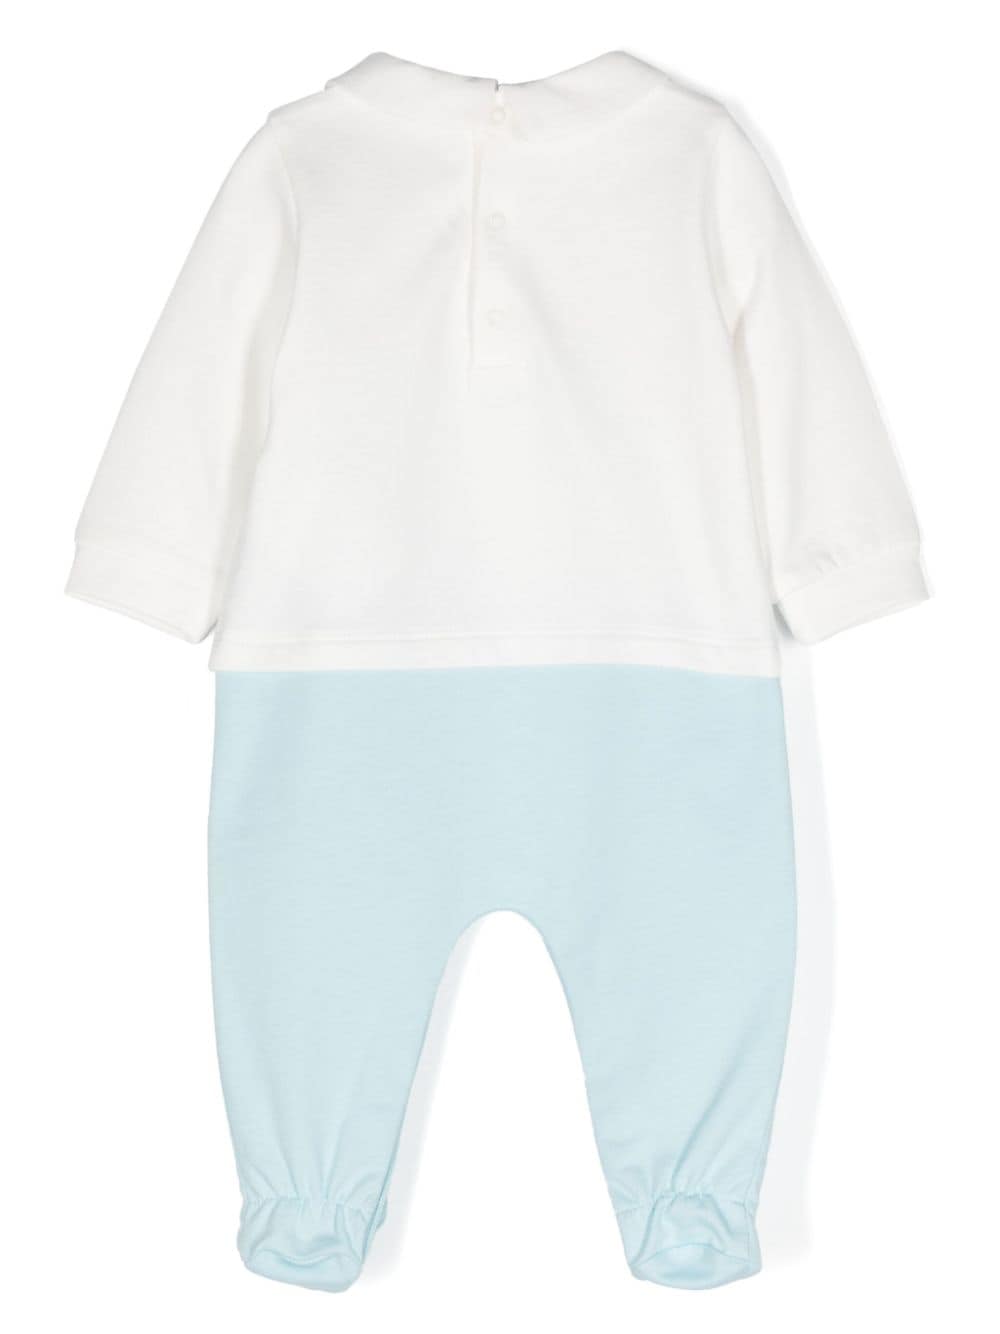 Tutina per neonato in cotone azzurra e bianca